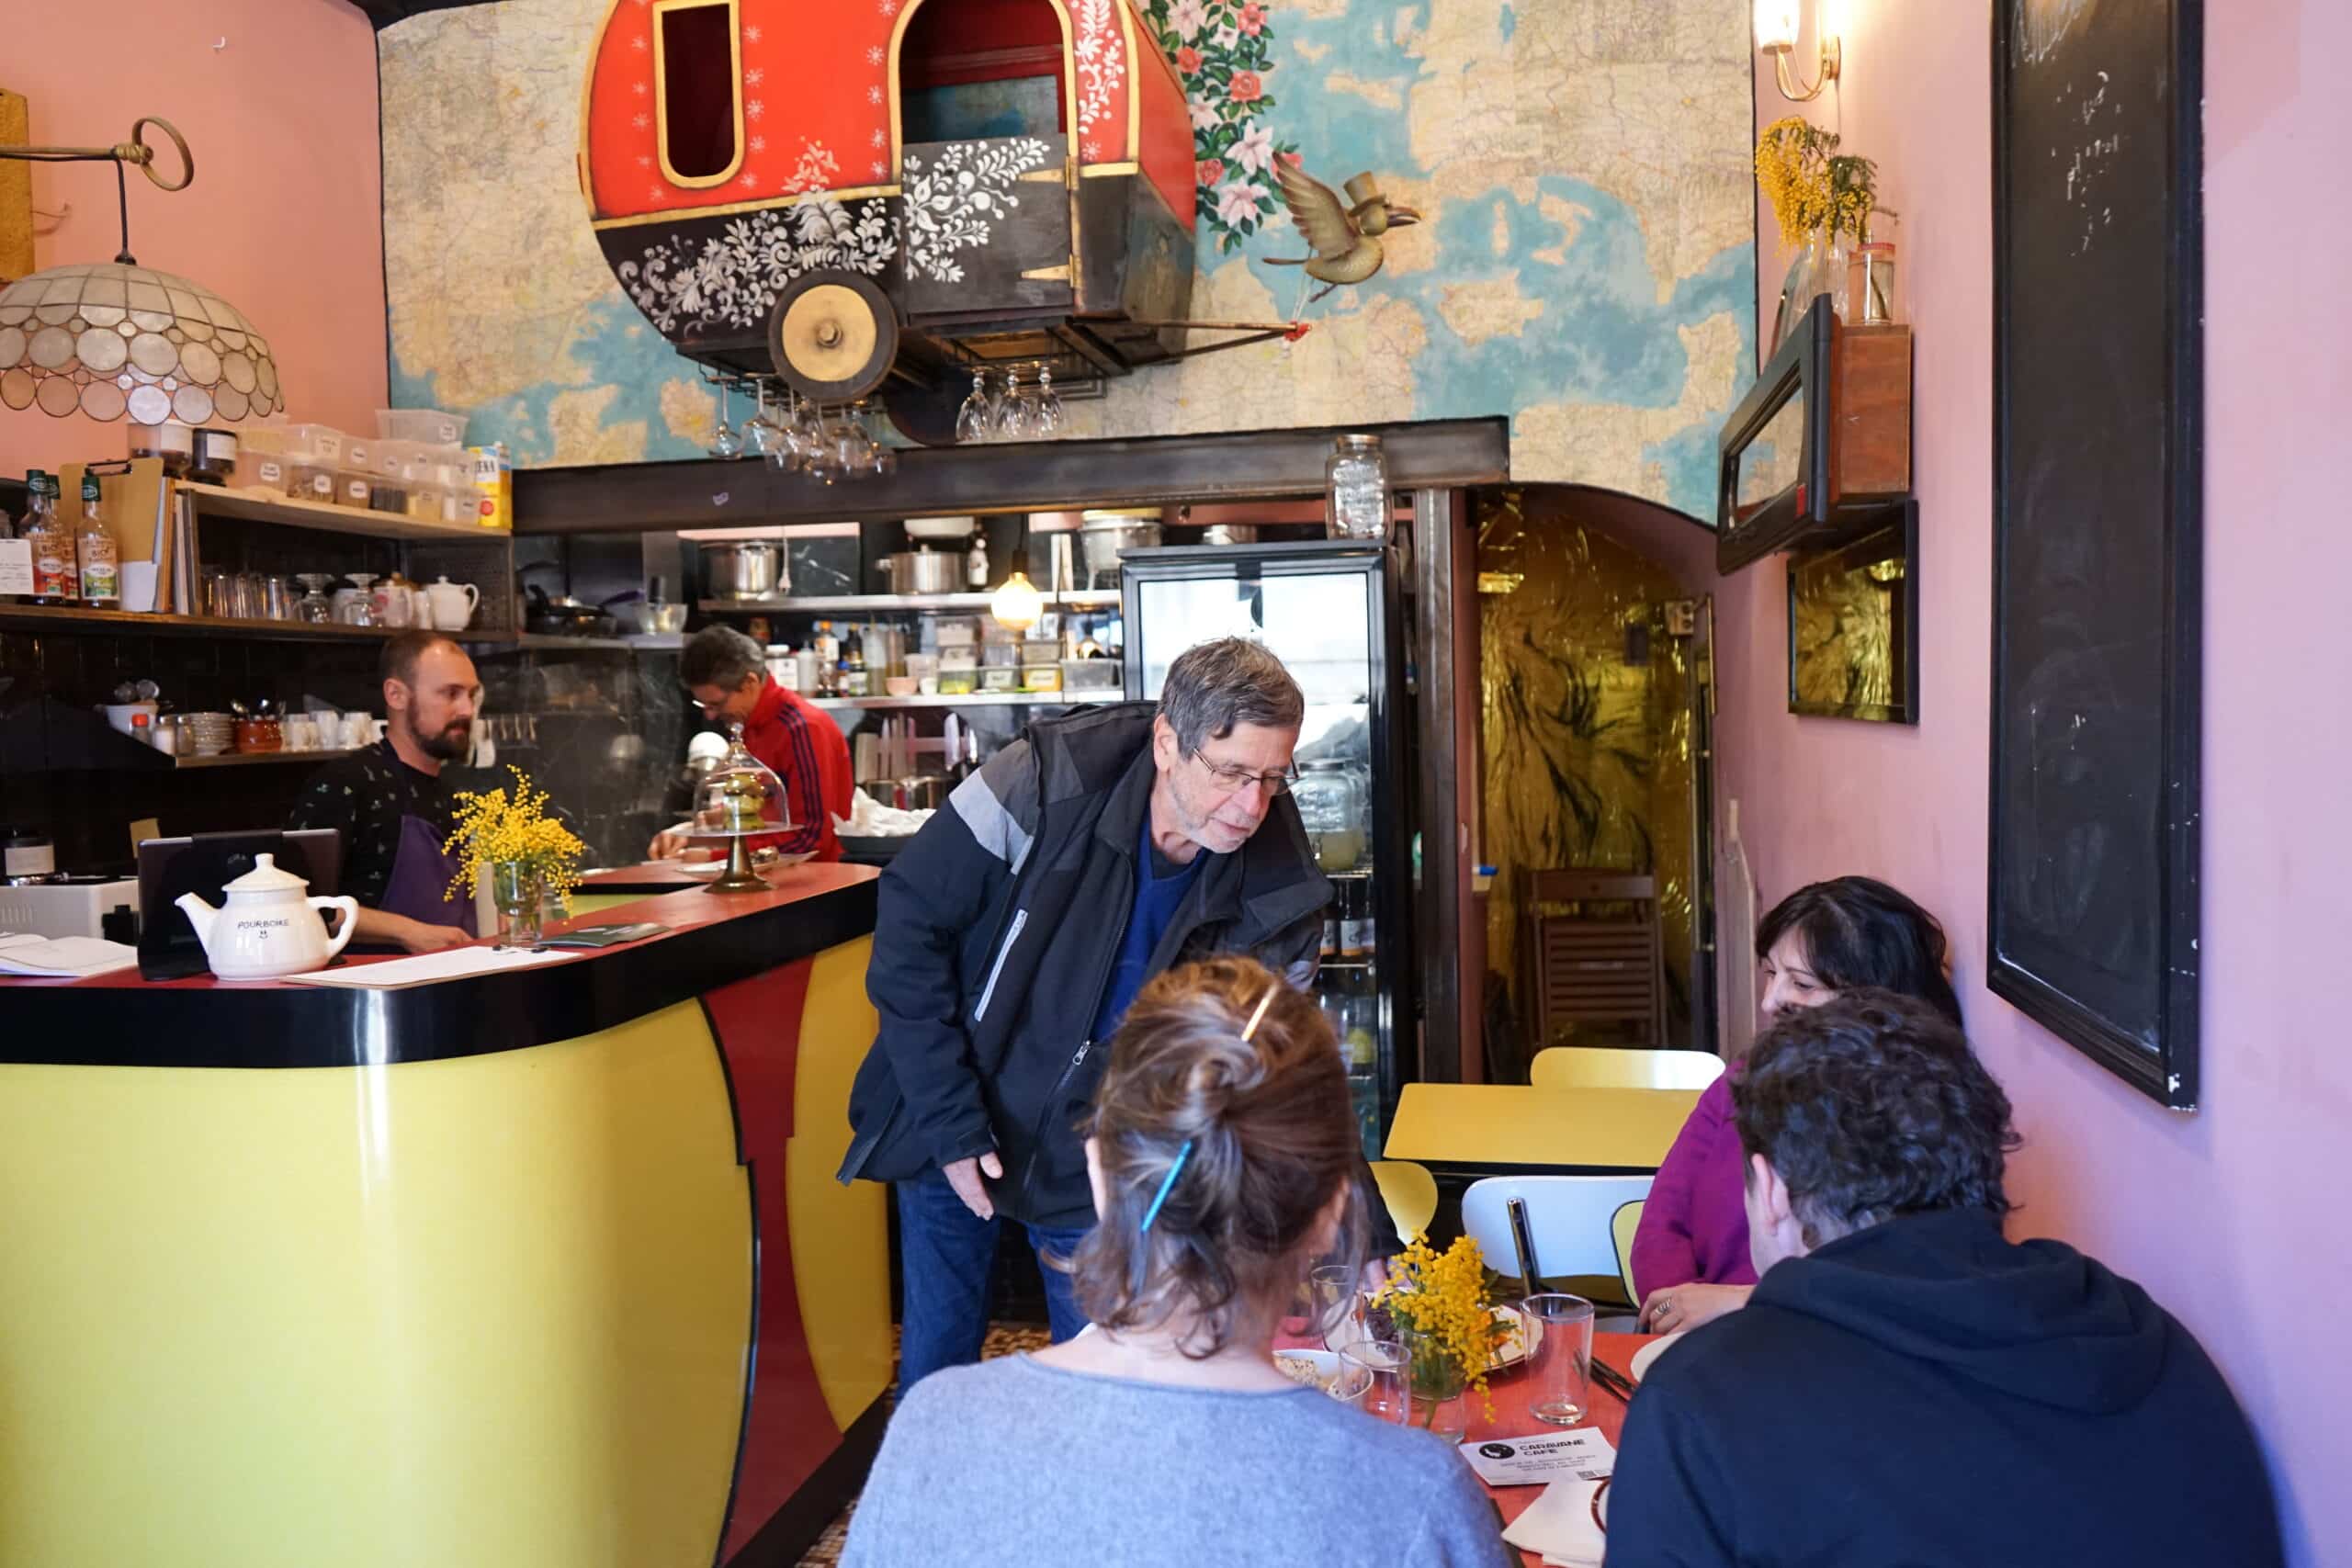 Caravane café, Le Caravane café, un restaurant coopératif sauvé par les habitants de l’Estaque, Made in Marseille